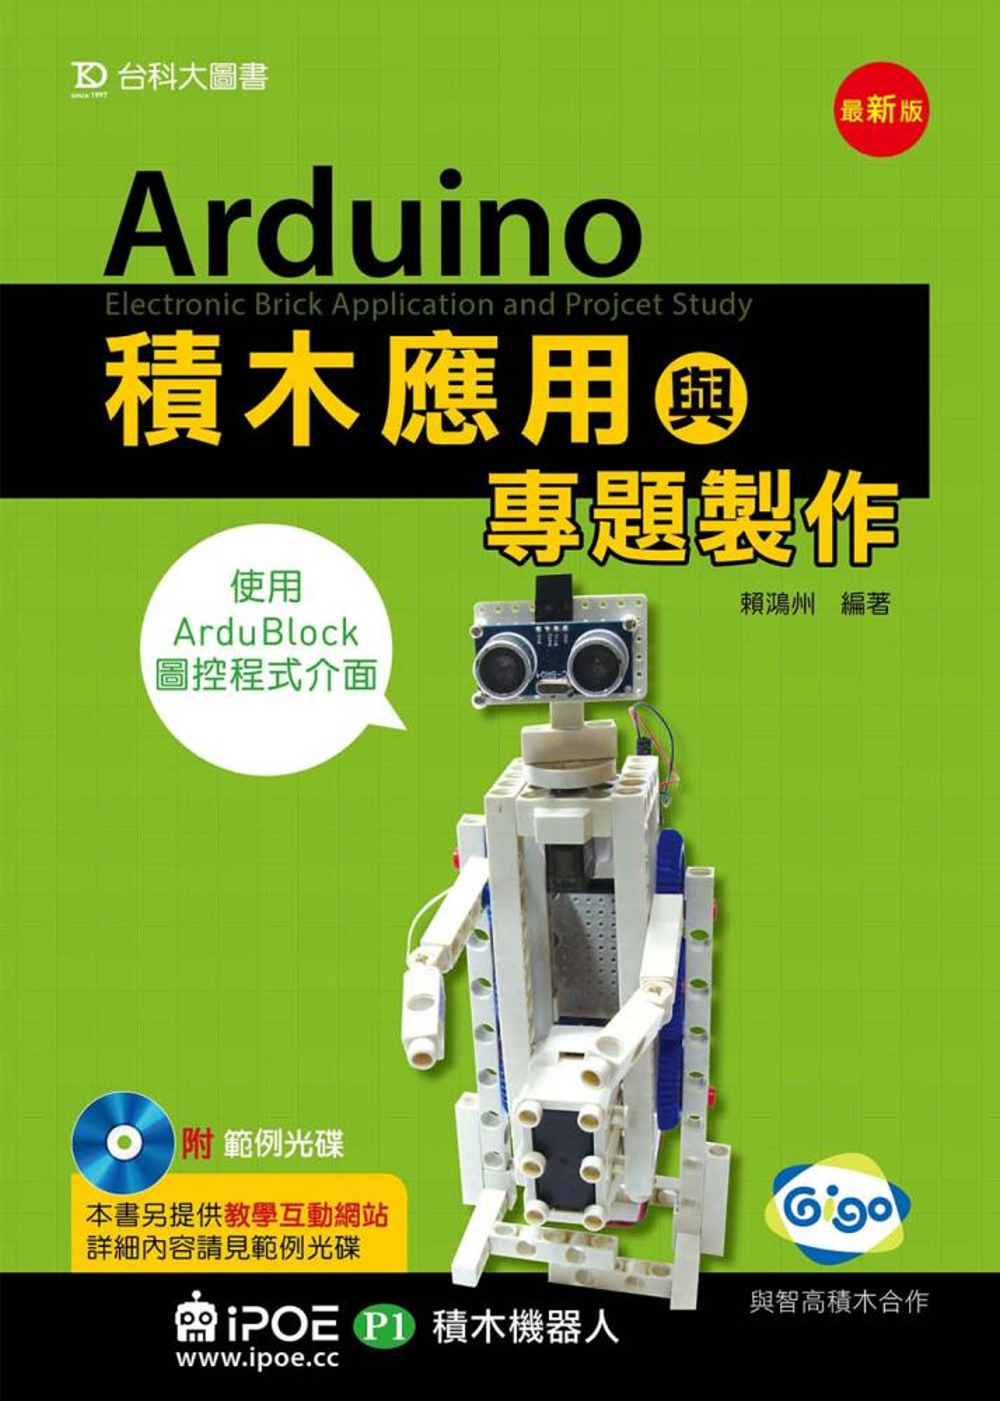 Arduino積木應用(iPOE P1積木機器人)與專題製作...